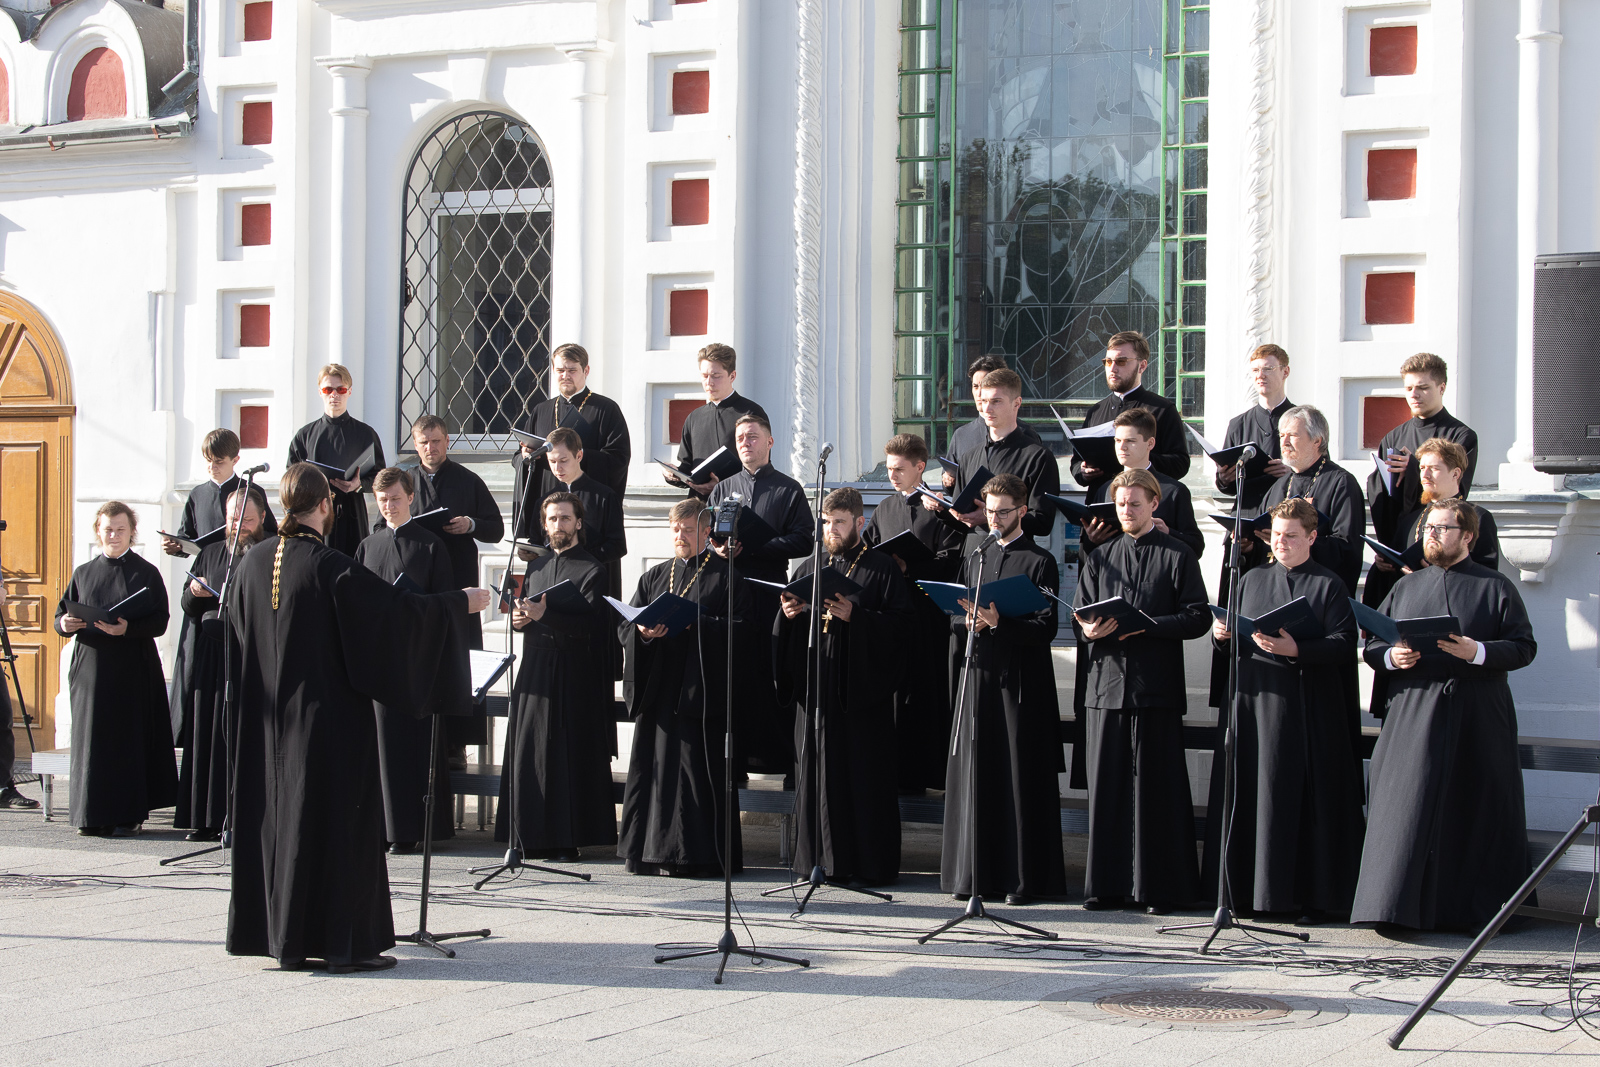 Телестудией Саратовской митрополии подготовлен видеосюжет о концерте сводного хора духовенства Саратовской епархии и СПДС